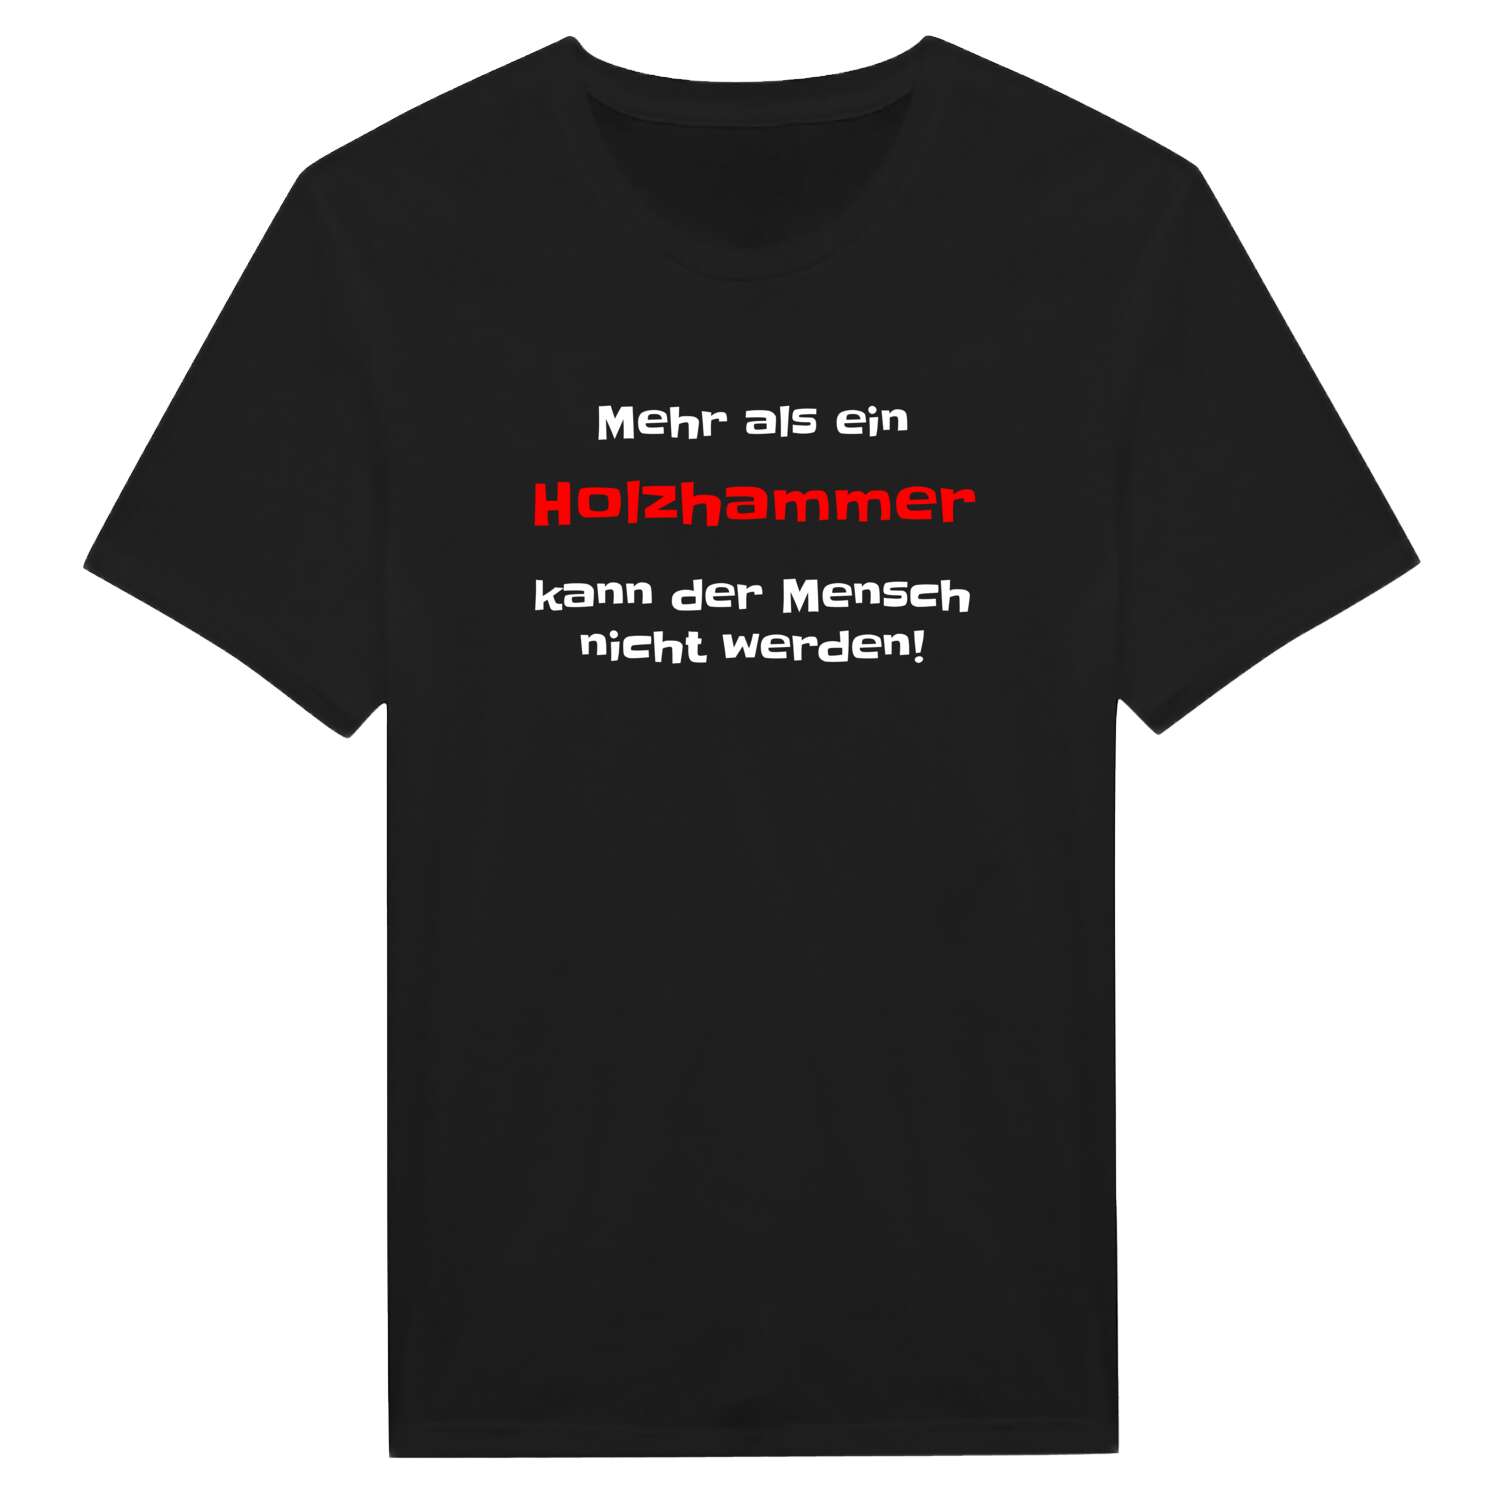 Holzhamm T-Shirt »Mehr als ein«